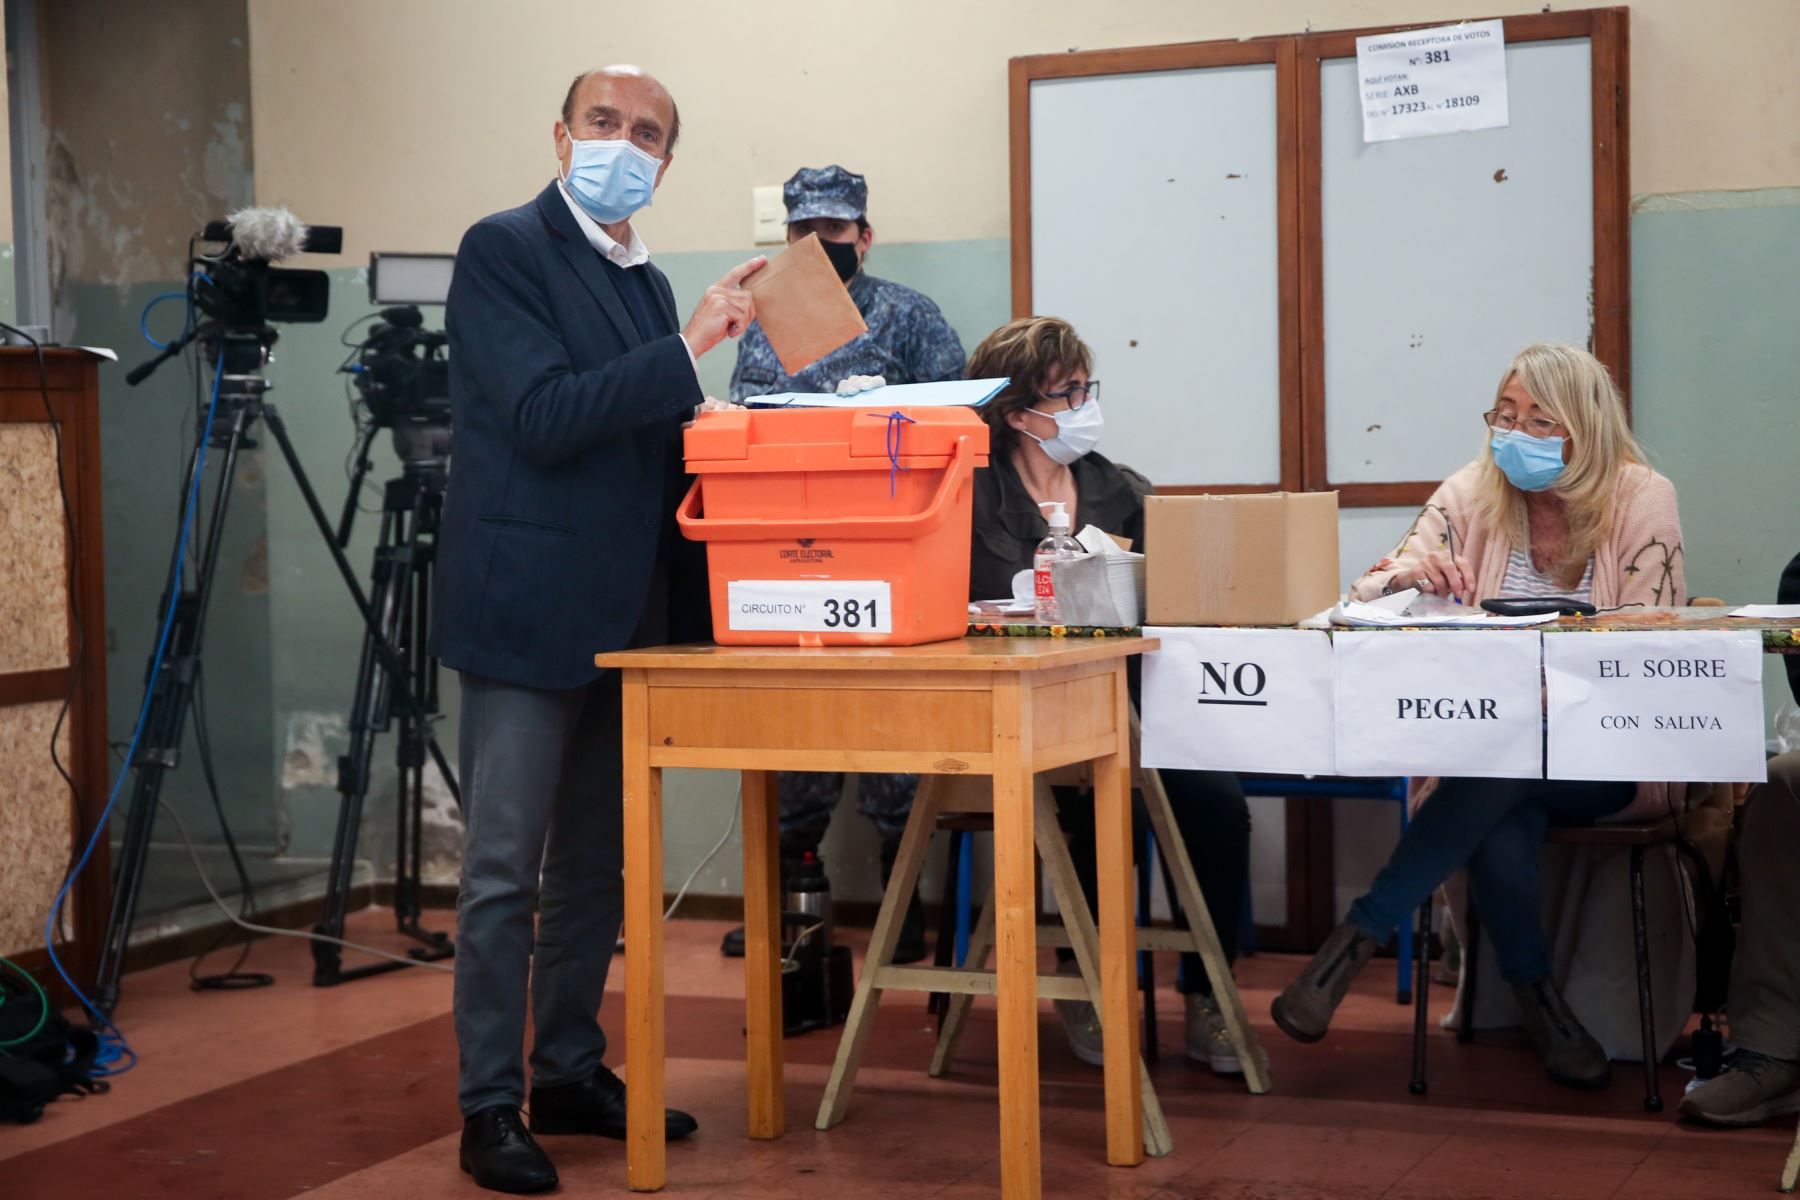 El candidato a la Intendencia de Montevideo por el partido Frente Amplio, Daniel Martínez, vota durante el desarrollo de las elecciones regionales en Montevideo.
Foto: EFE